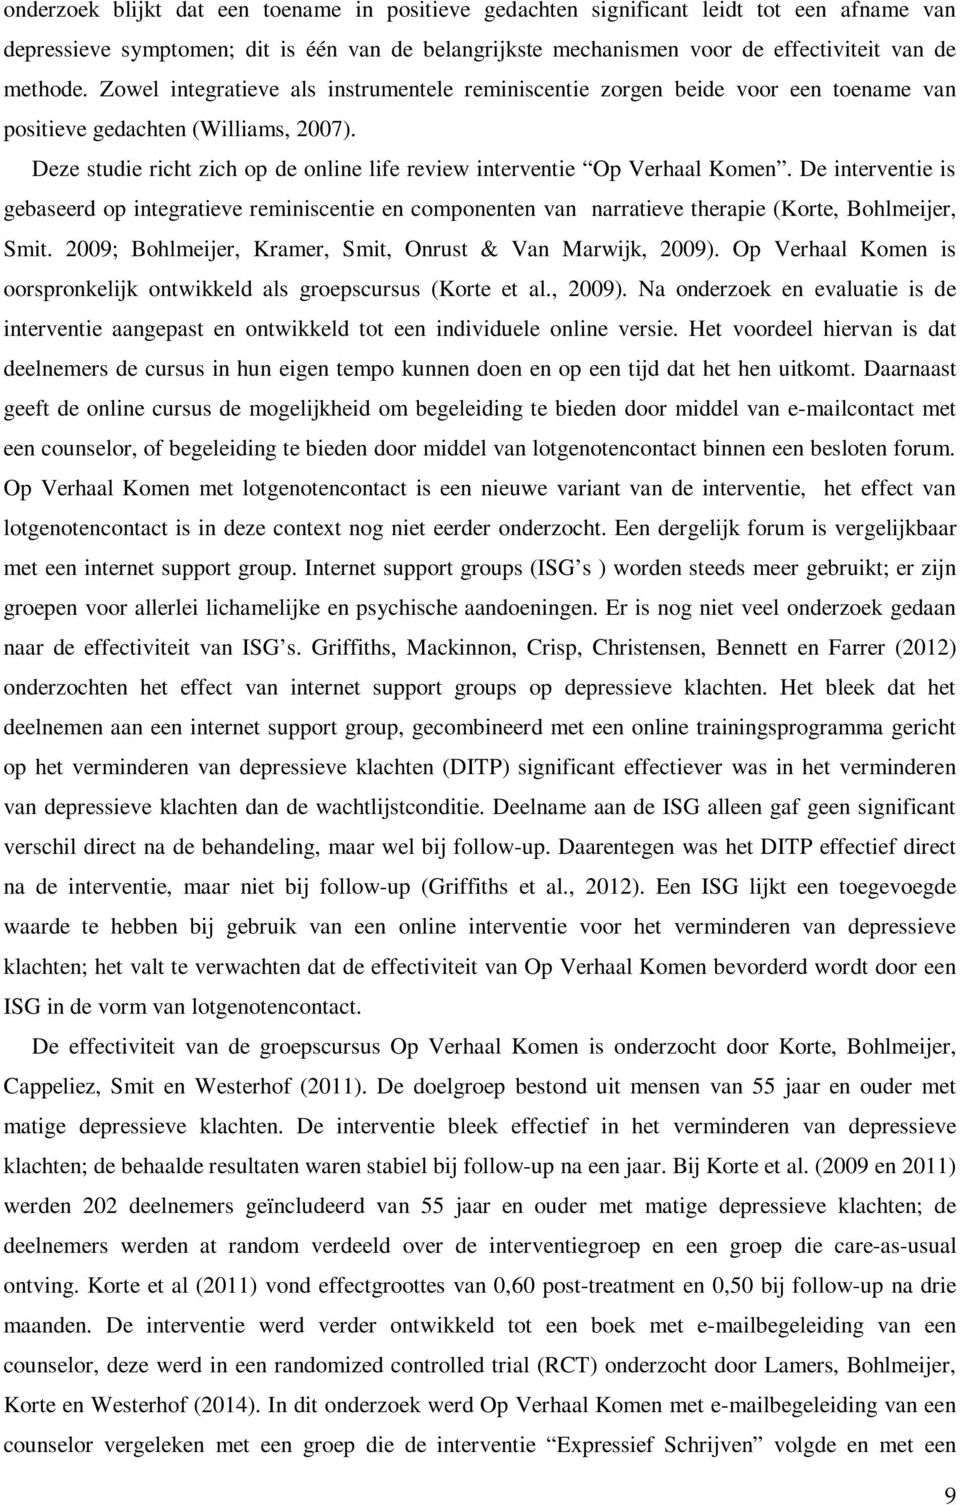 De interventie is gebaseerd op integratieve reminiscentie en componenten van narratieve therapie (Korte, Bohlmeijer, Smit. 2009; Bohlmeijer, Kramer, Smit, Onrust & Van Marwijk, 2009).